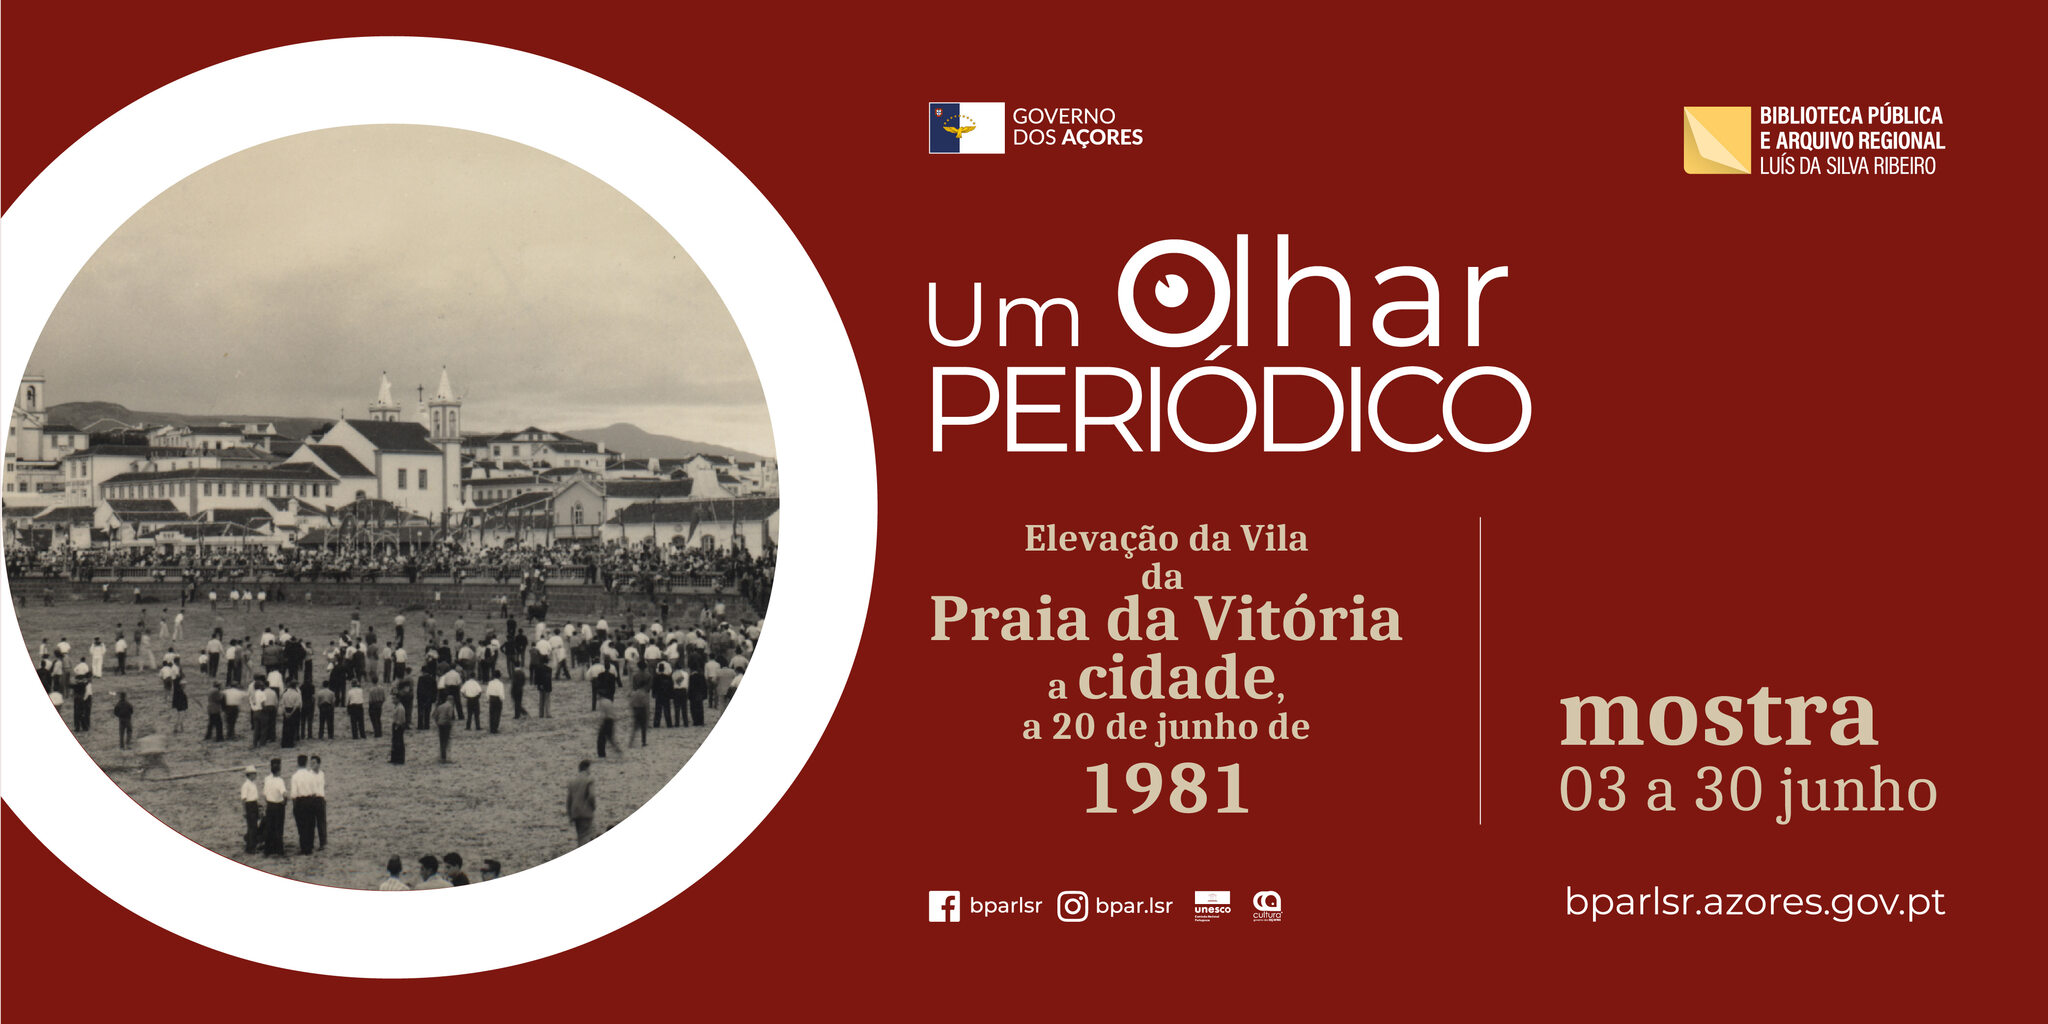 “Elevação da vila da Praia da Vitória a cidade, 20 de junho de 1981”